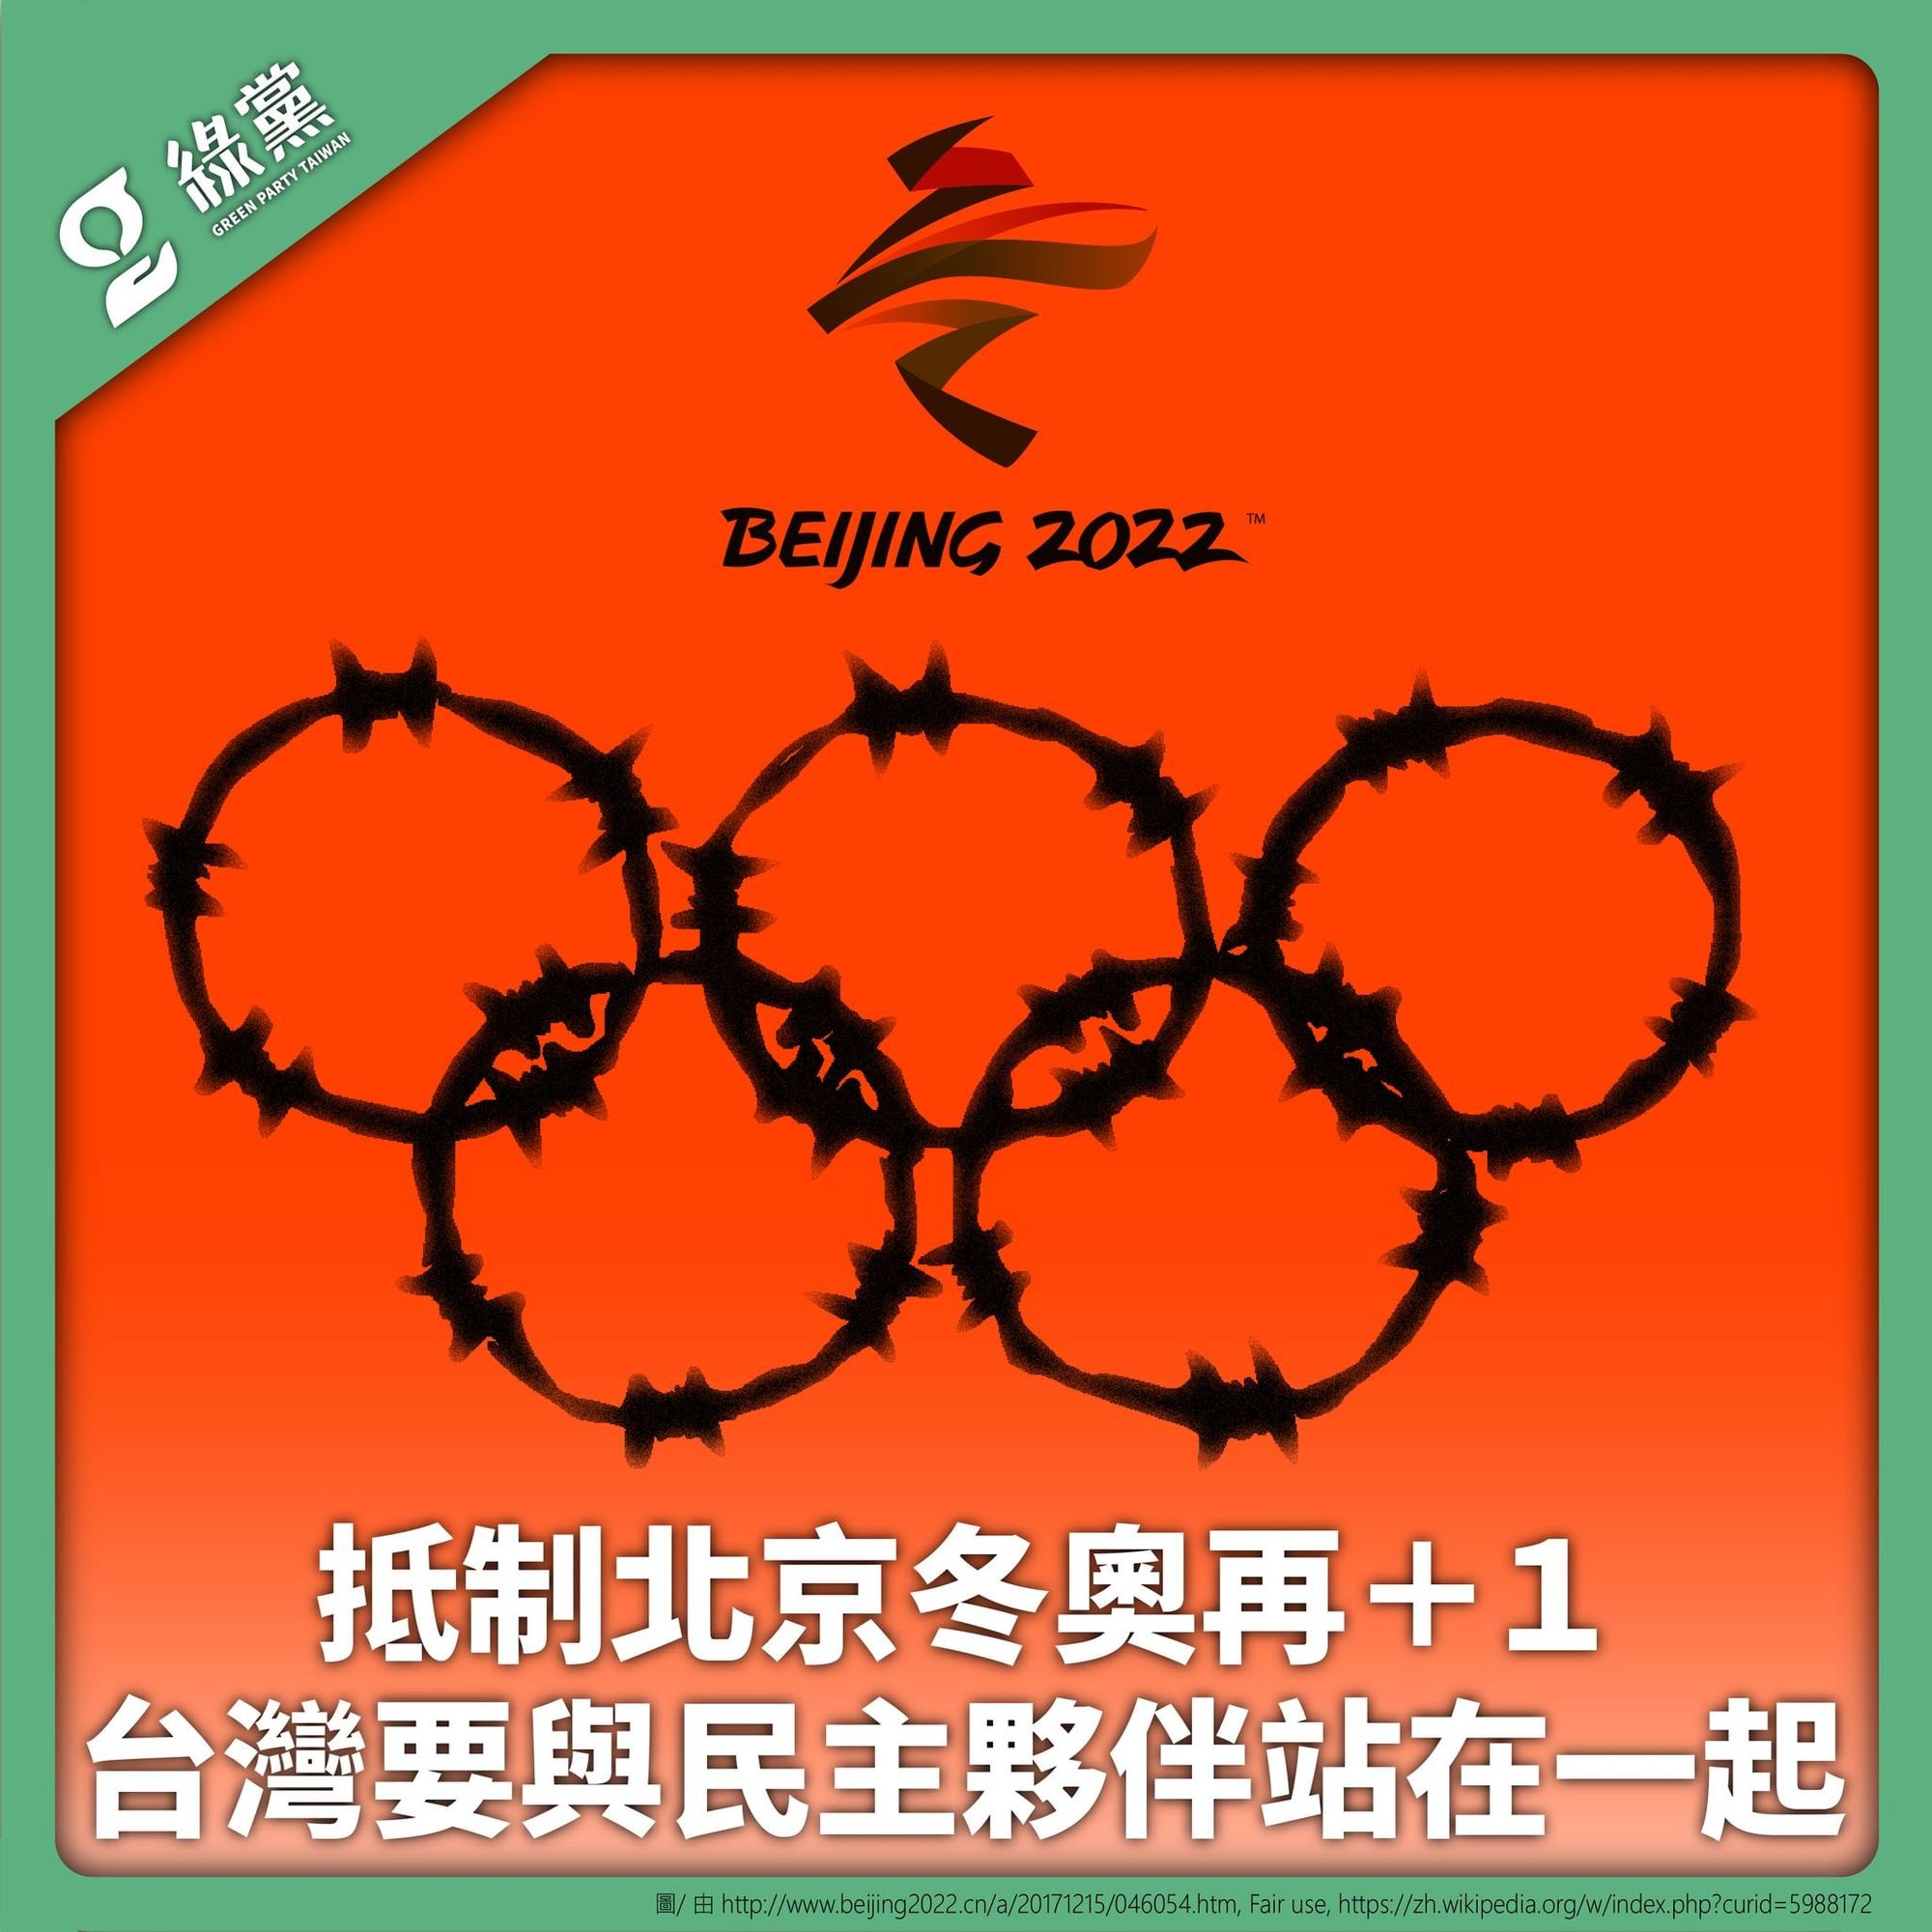 【抵制北京冬奧再＋１ 台灣要與民主夥伴站在一起】